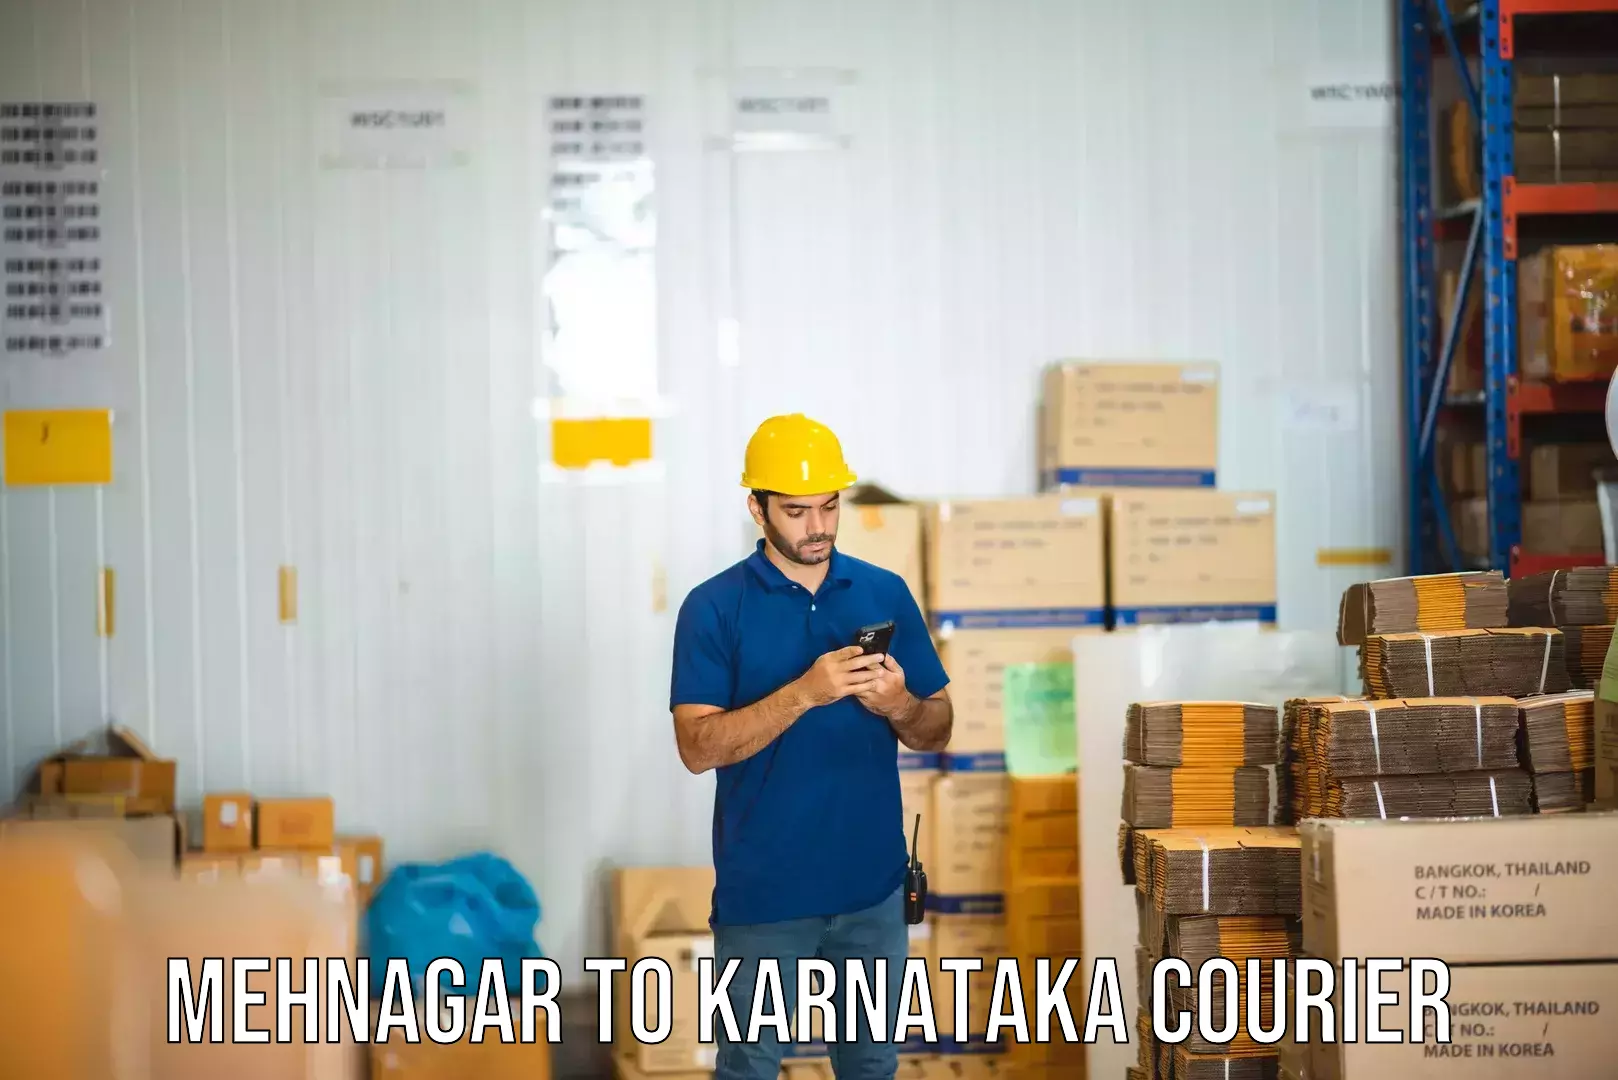 Round-the-clock parcel delivery Mehnagar to Karnataka